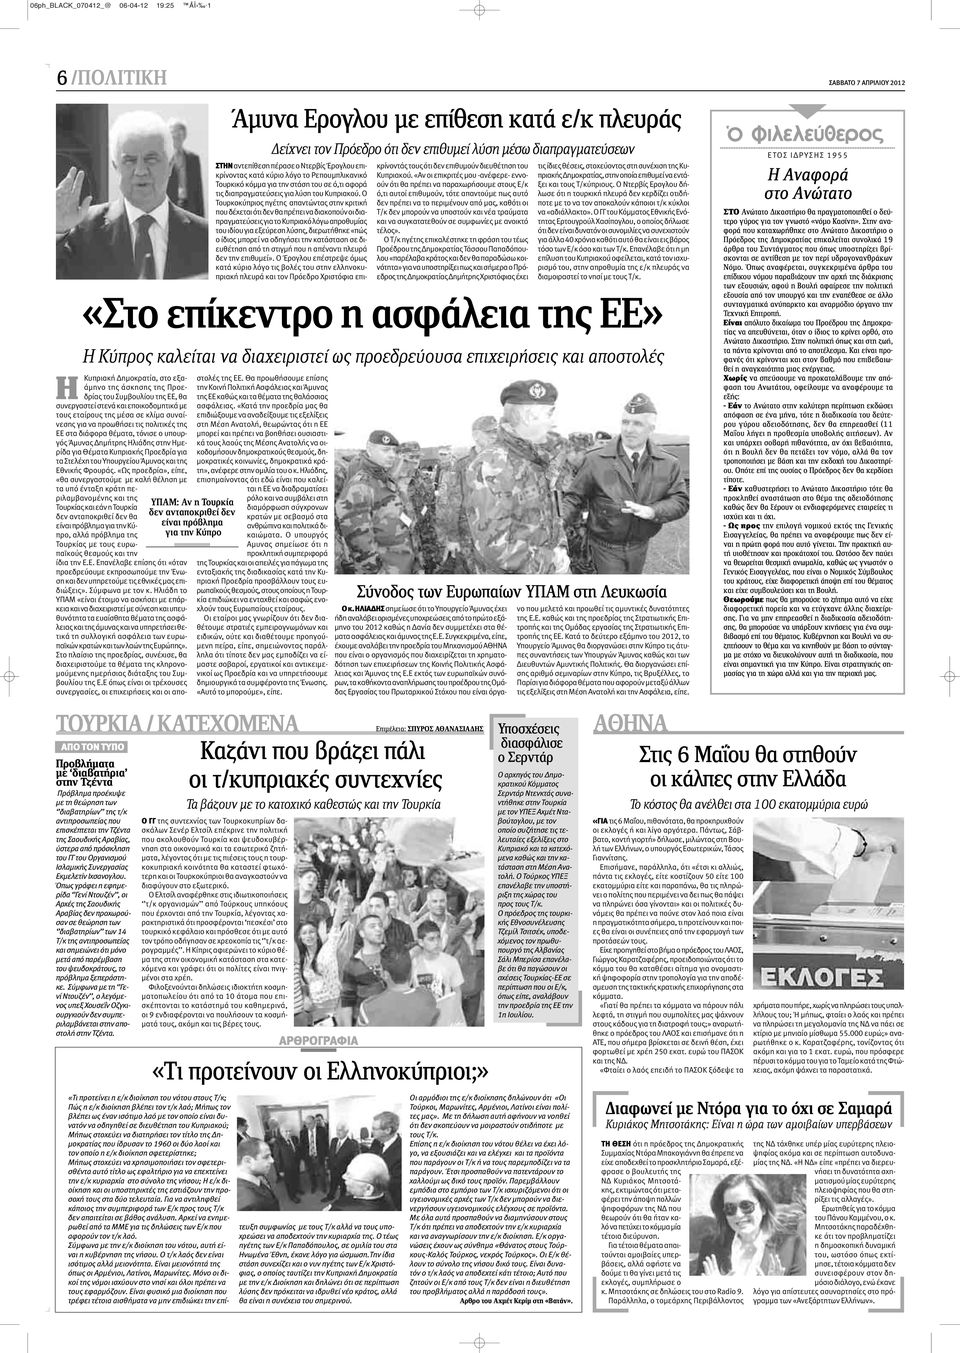 κλίμα συναίνεσης για να προωθήσει τις πολιτικές της ΕΕ στα διάφορα θέματα, τόνισε ο υπουργός Άμυνας Δημήτρης Ηλιάδης στην Ημερίδα για Θέματα Κυπριακής Προεδρία για τα Στελέχη του Υπουργείου Άμυνας